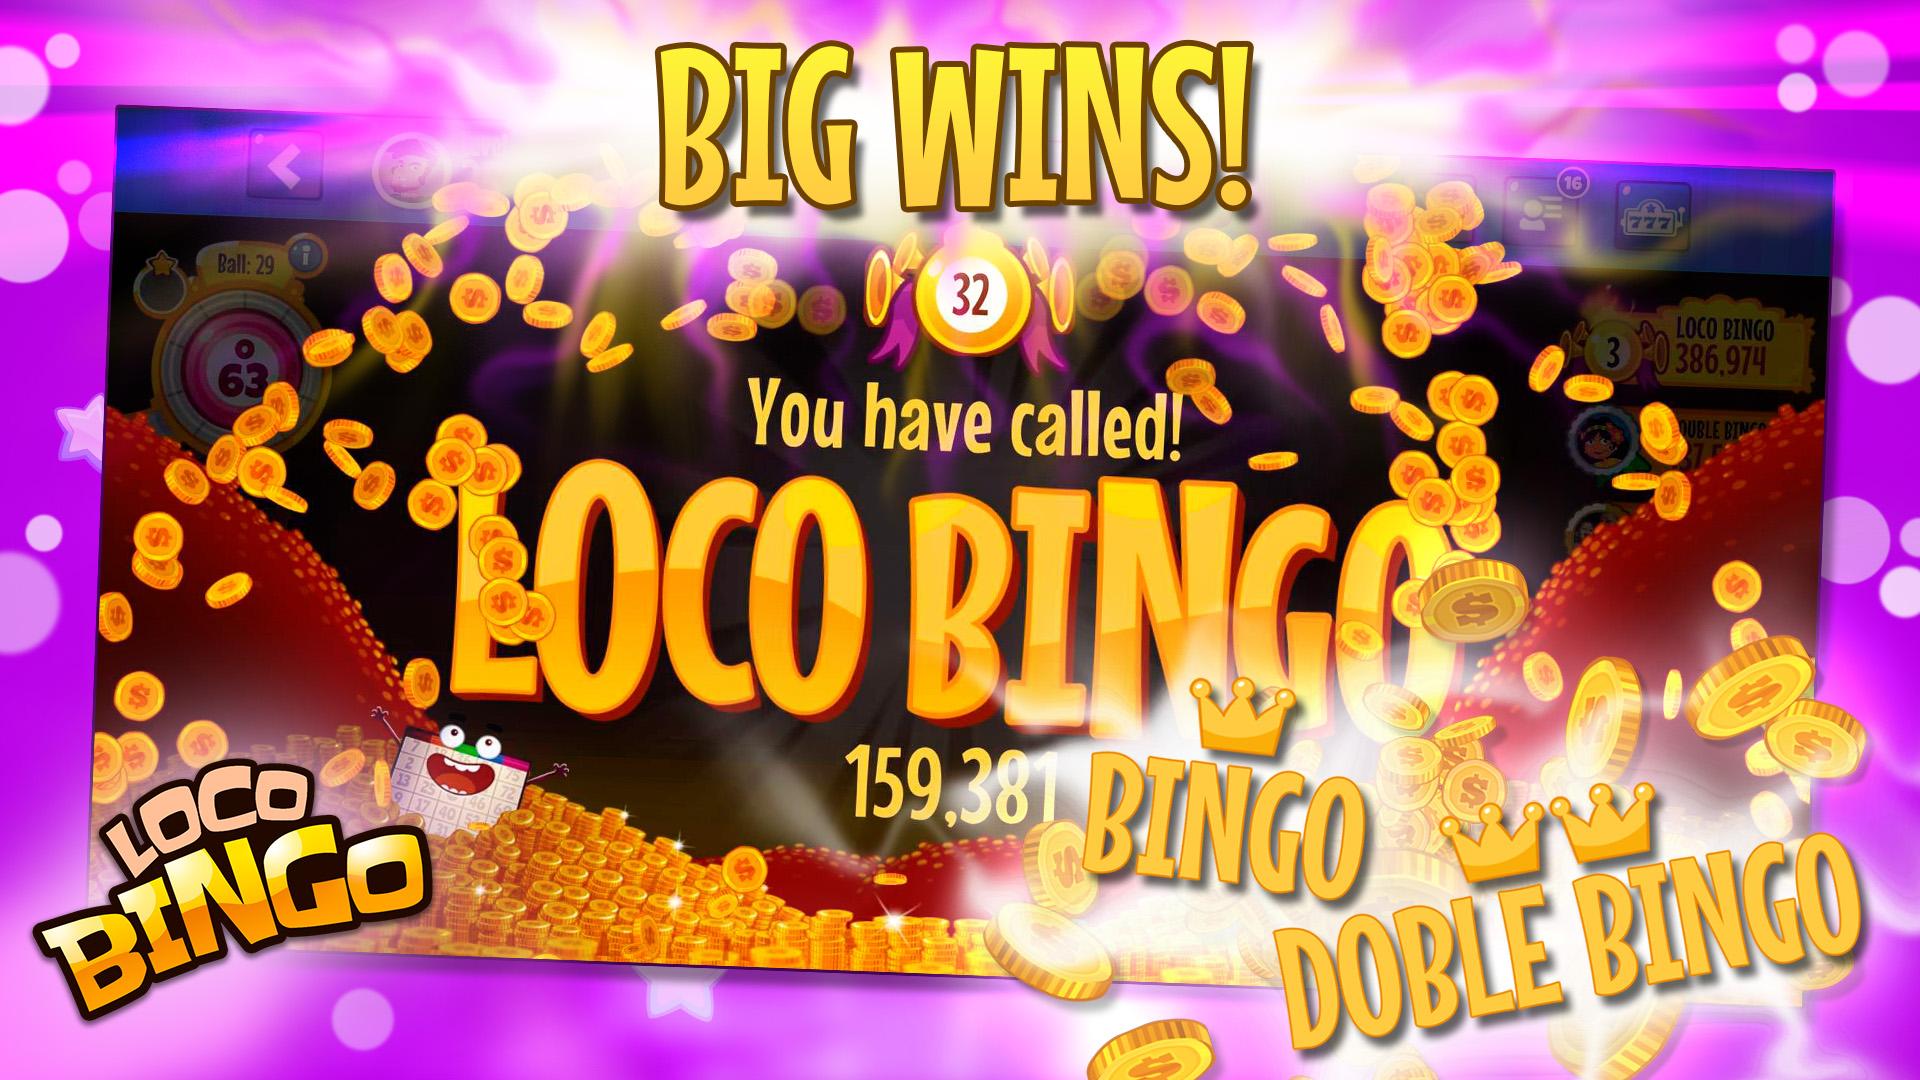 Loco bingo. Casino games slots 2021.6.0 Screenshot 10